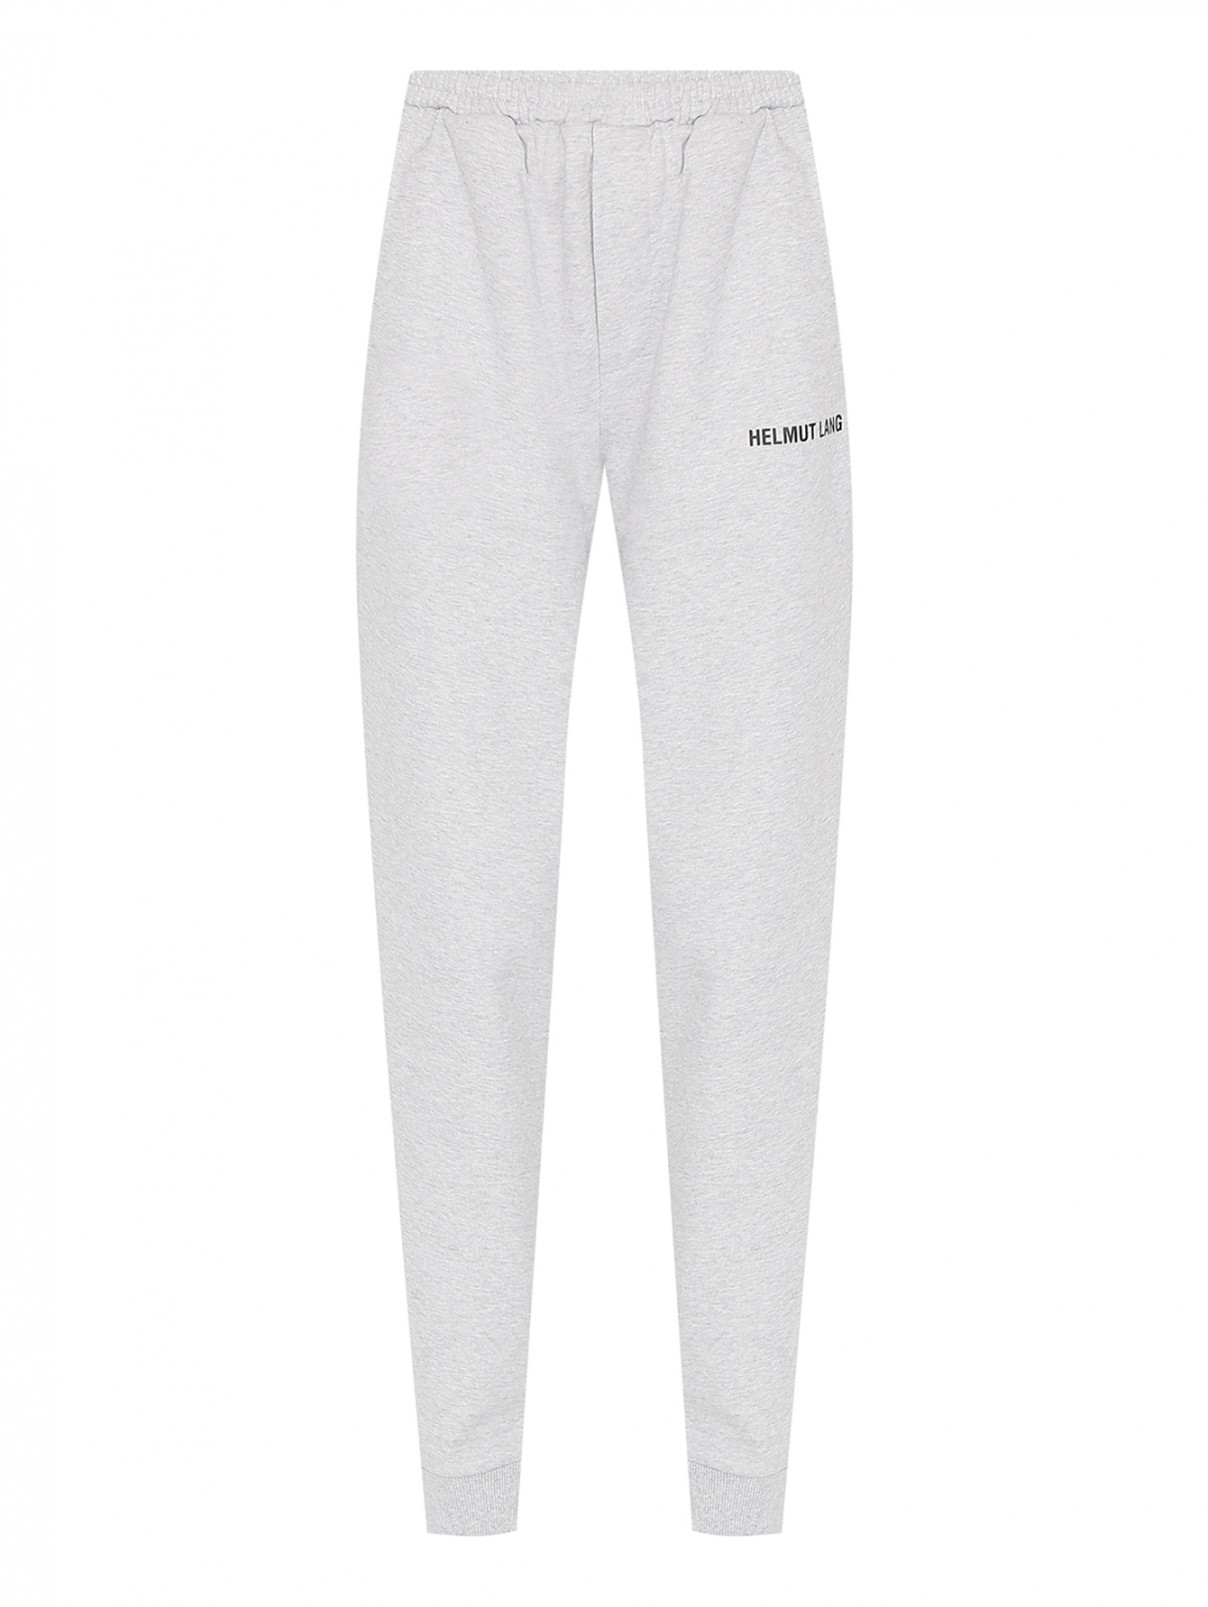 Трикотажные брюки с логотипом Helmut Lang  –  Общий вид  – Цвет:  Серый